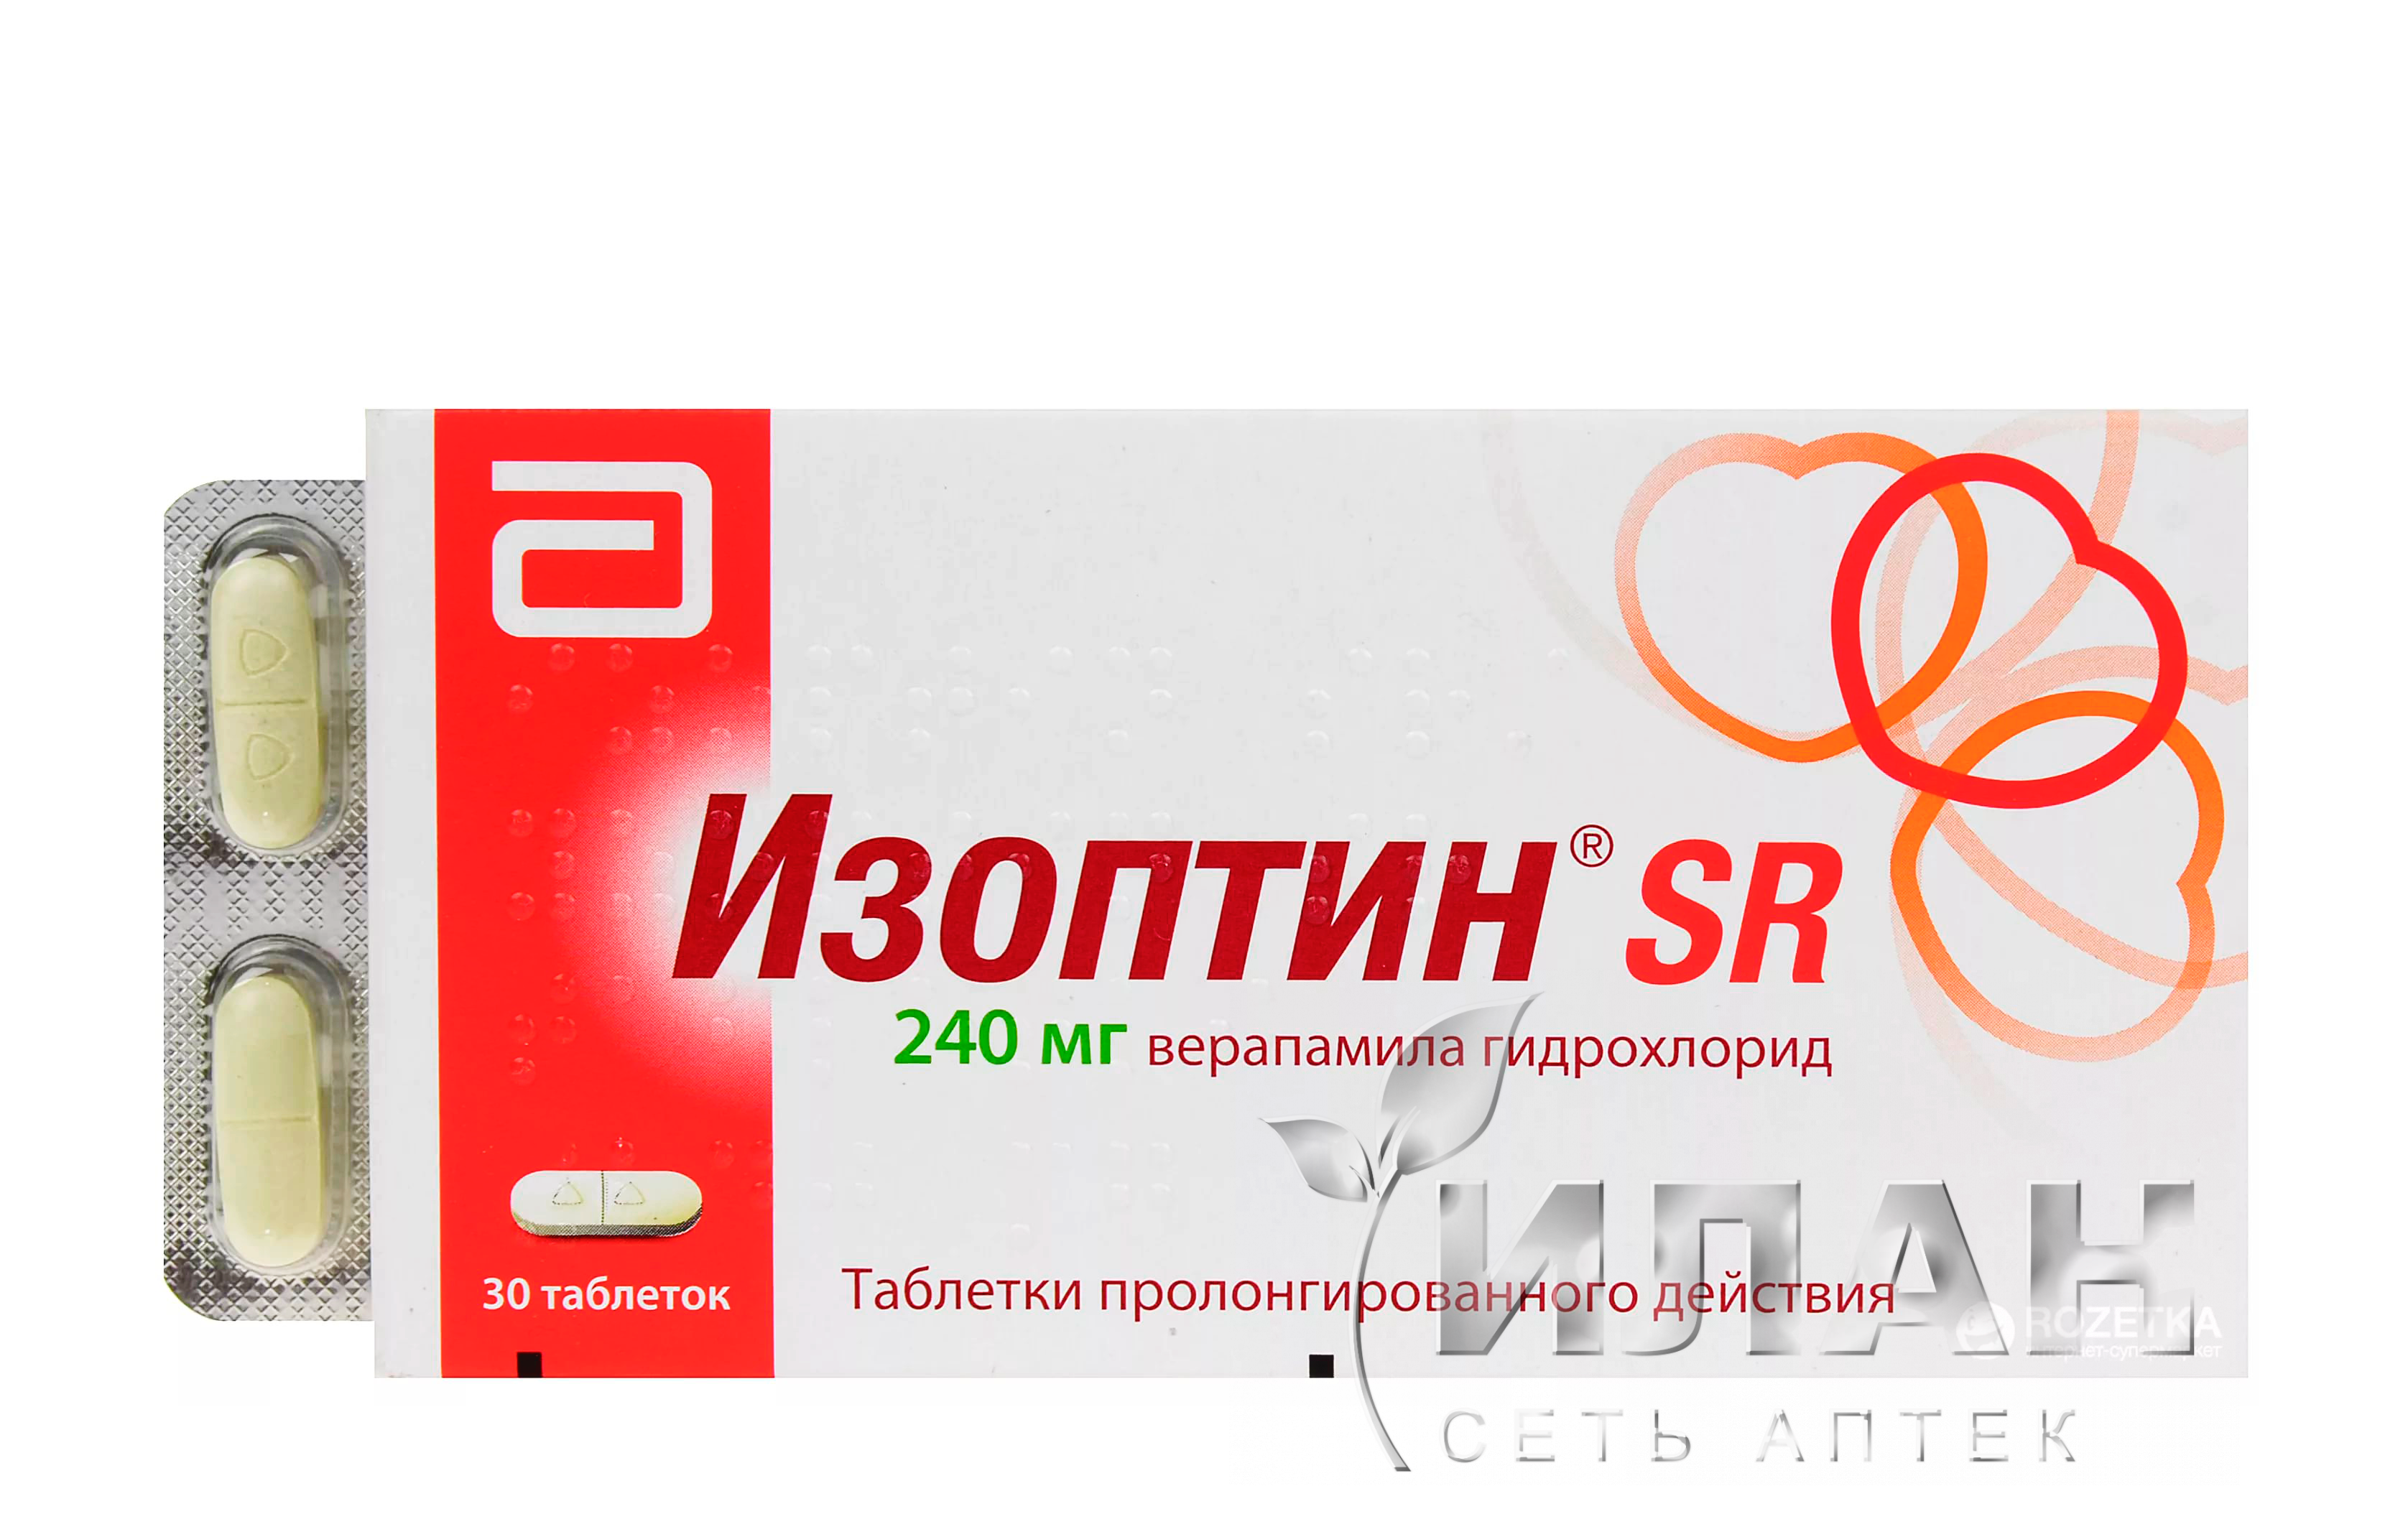 Изоптин СР 240 (Isoptin SR 240)